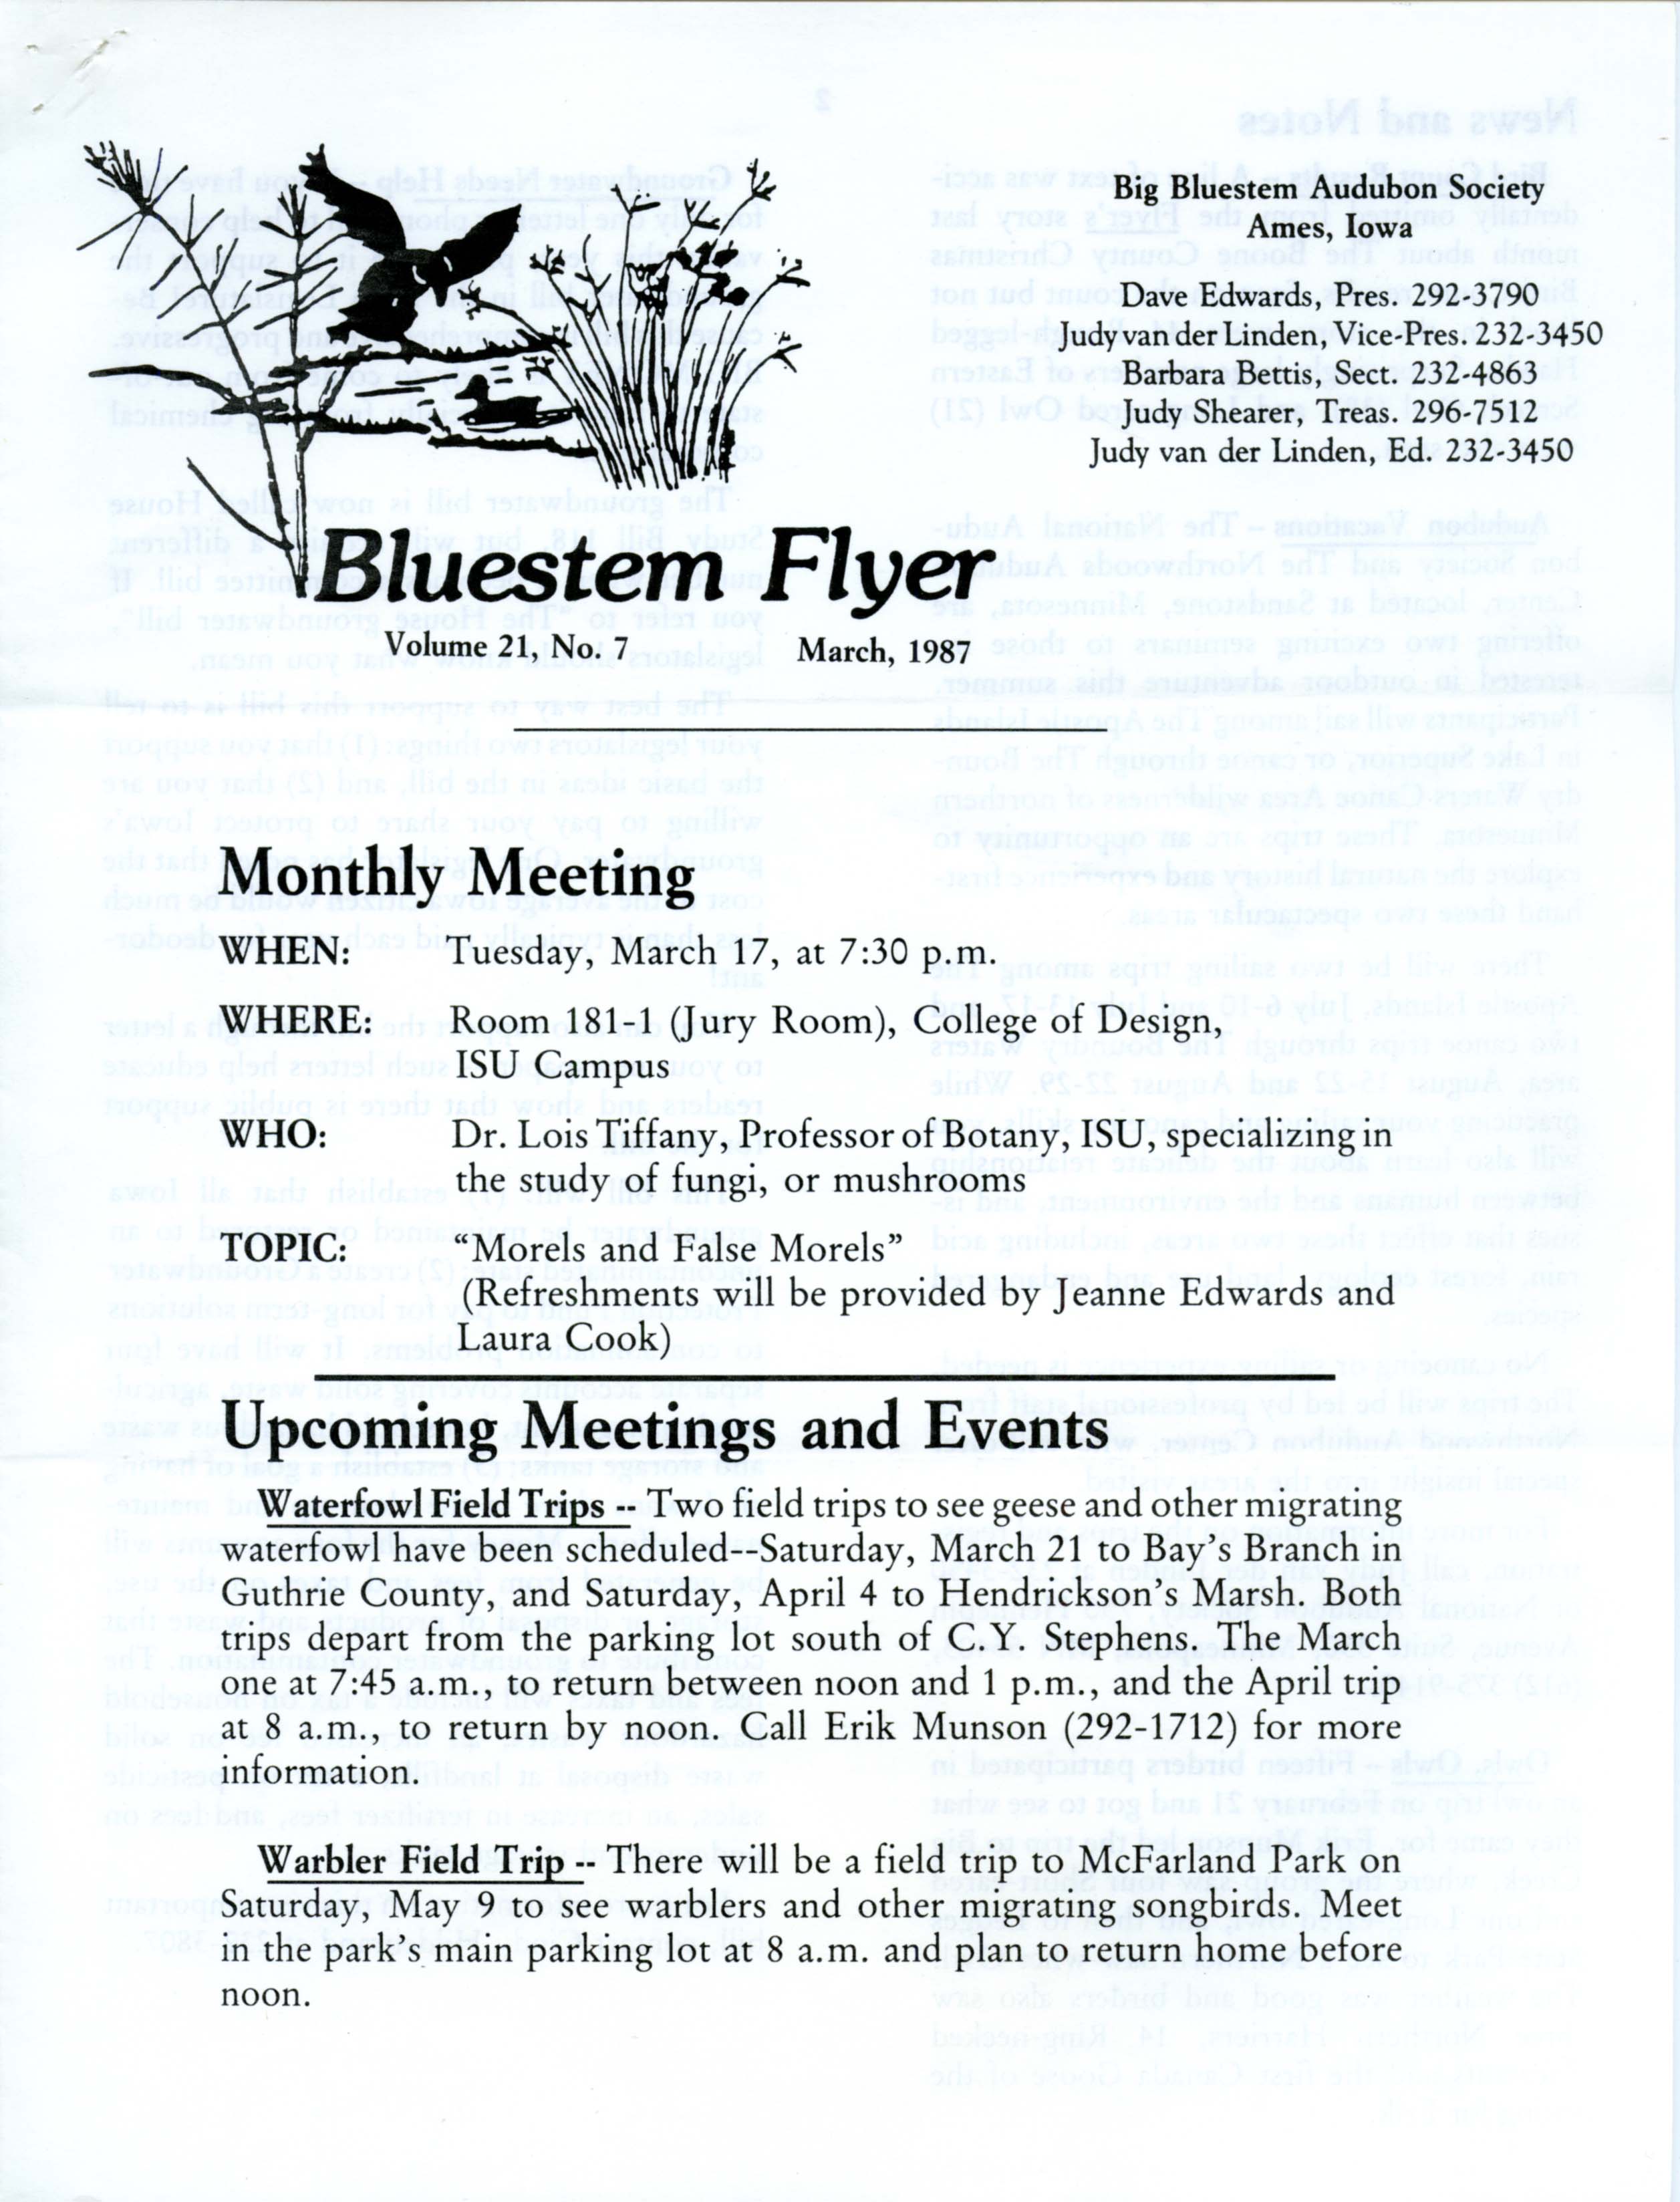 Bluestem Flyer, Volume 21, Number 7, March 1987 